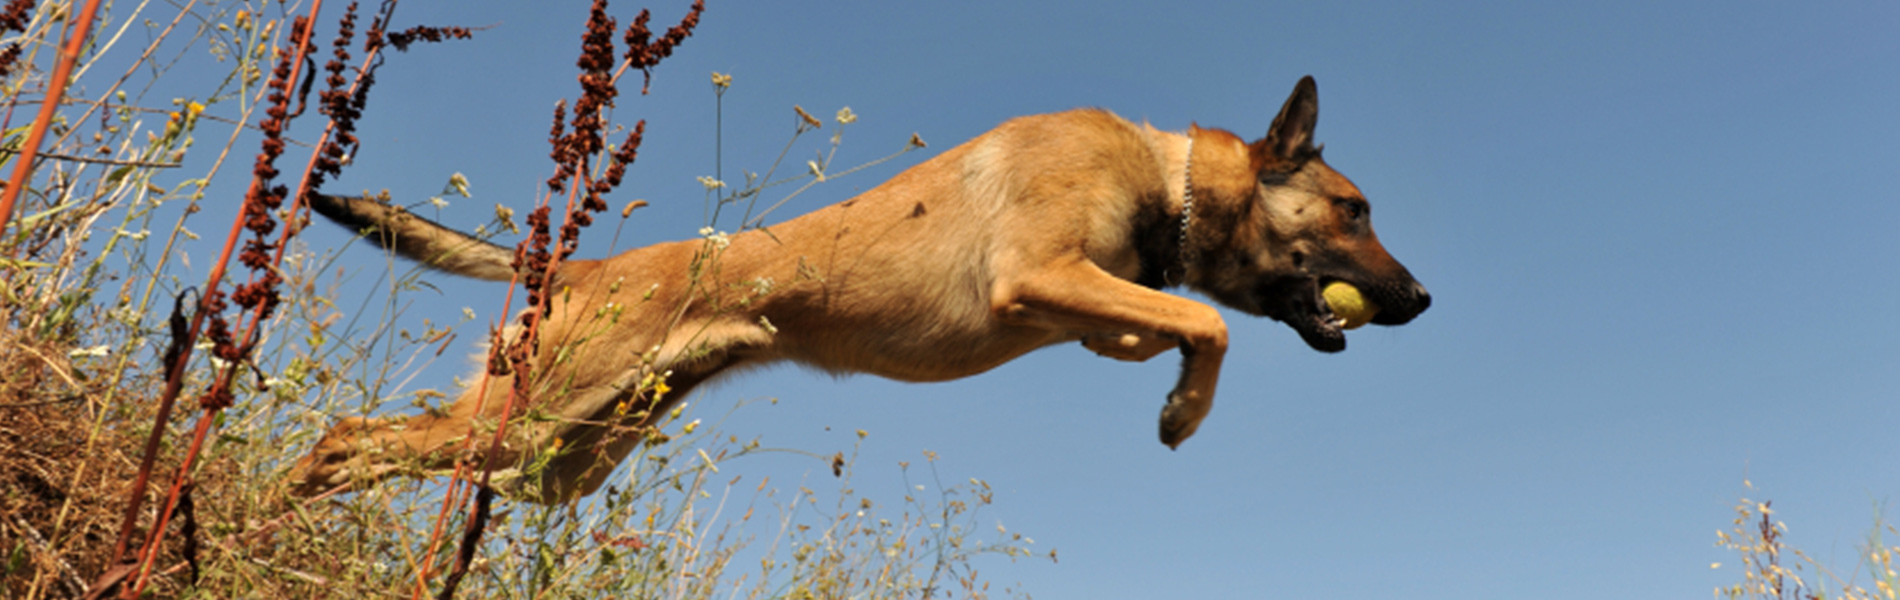 Gradlyn Petshipping Header minensuchhund referenz